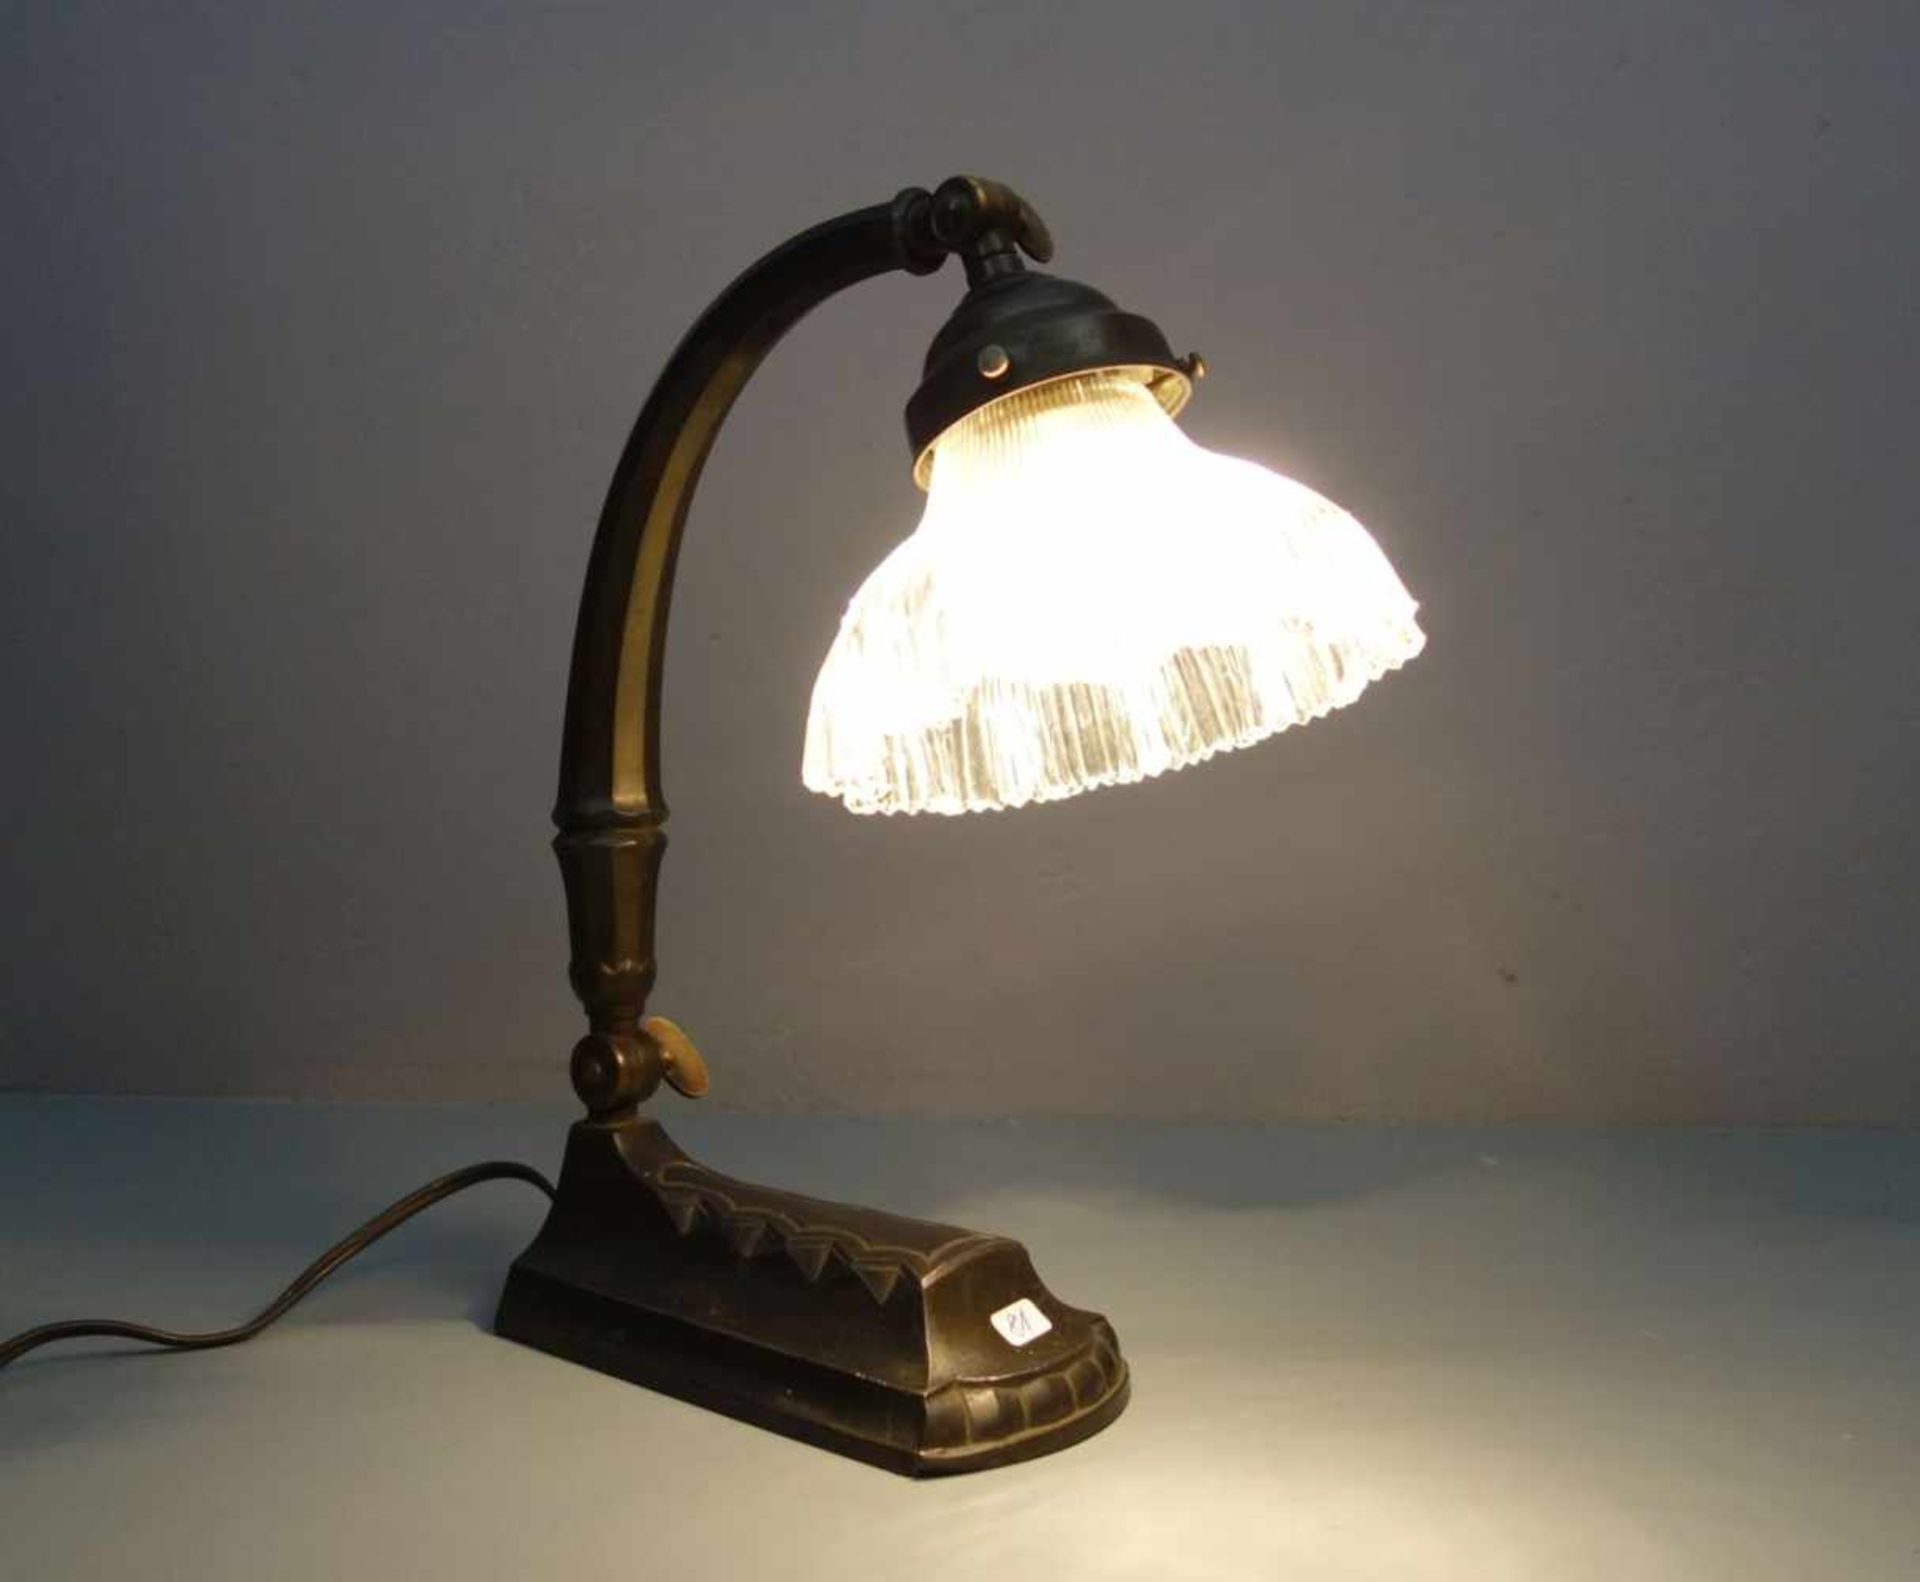 ART DÉCO - TISCHLAMPE / SCHREIBTISCHLAMPE / art déco desk lamp, um 1920. Profilierter und